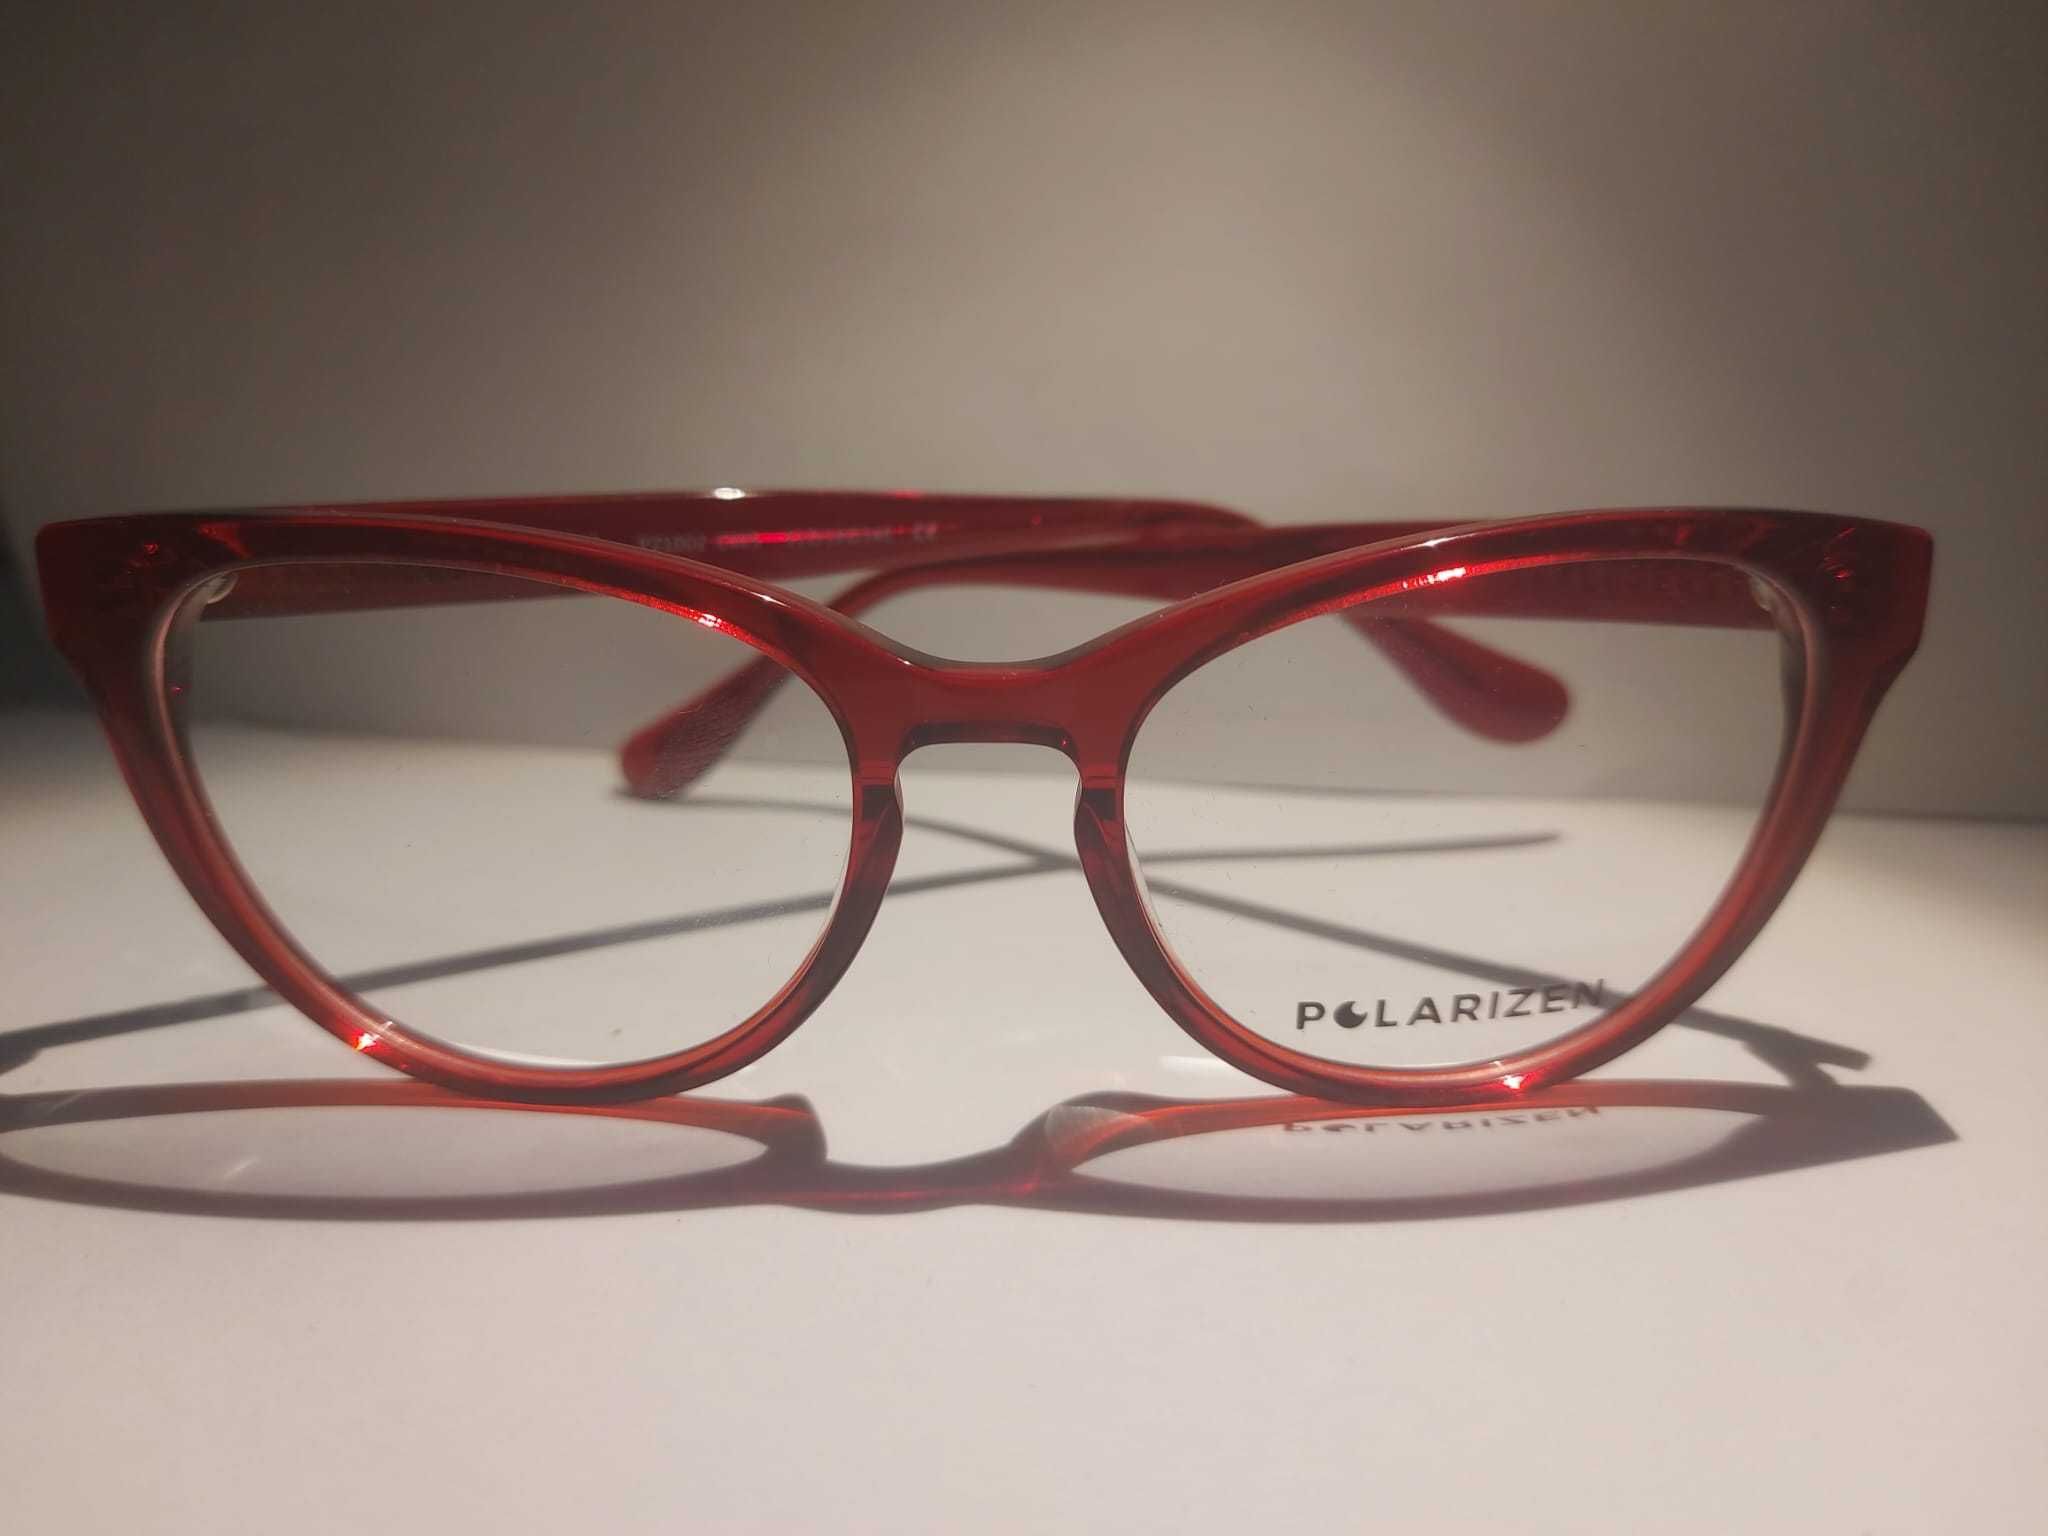 Rame ochelari de vedere dama Polarizen PZ1002 C005